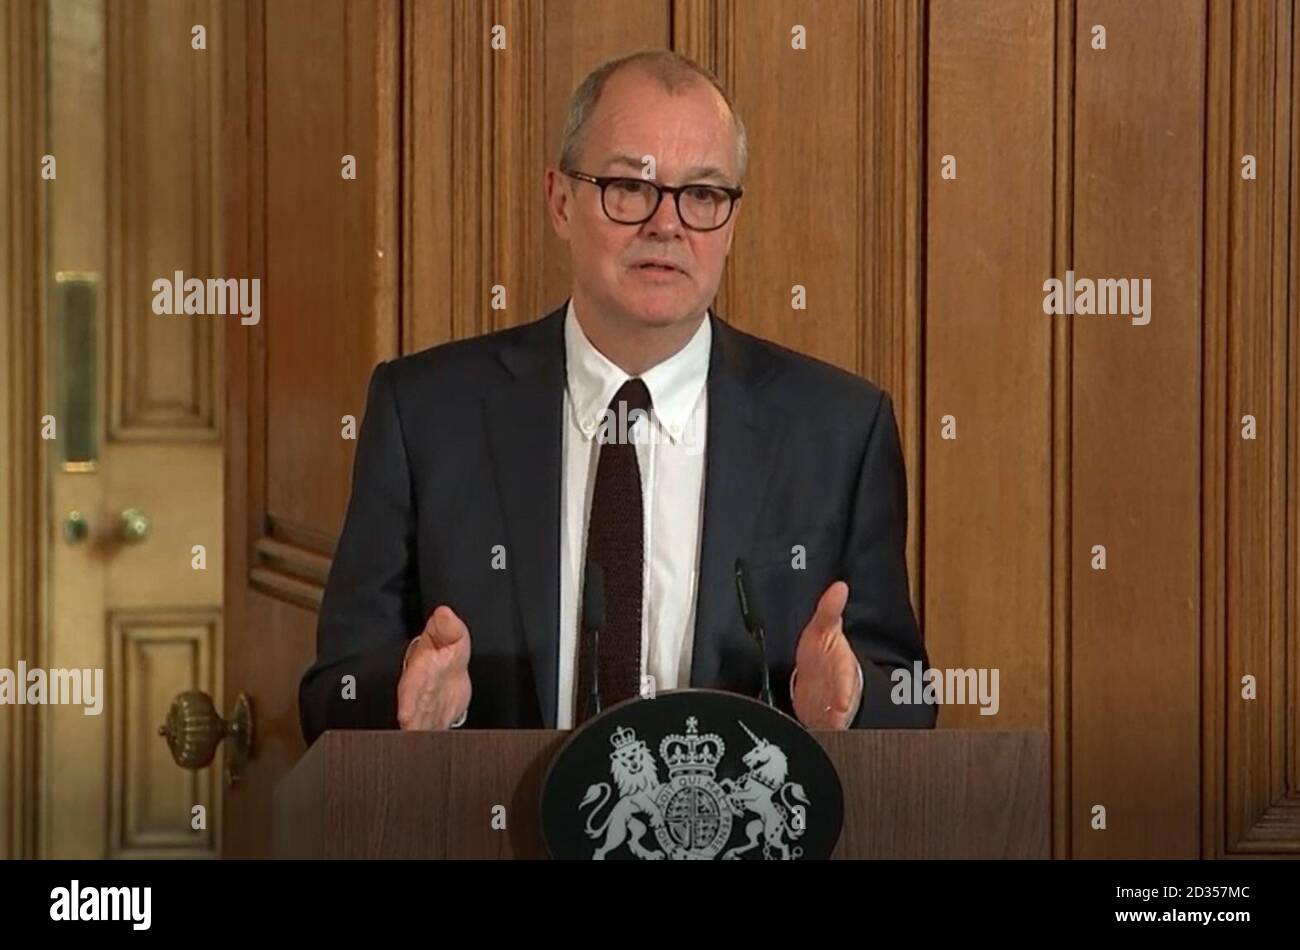 Un screengrab tiré de la vidéo de l'AP du conseiller scientifique en chef du gouvernement, Sir Patrick Vallance, prenant la parole lors d'une conférence de presse sur le plan d'action du gouvernement sur le coronavirus, au 10 Downing Street, Londres. Banque D'Images